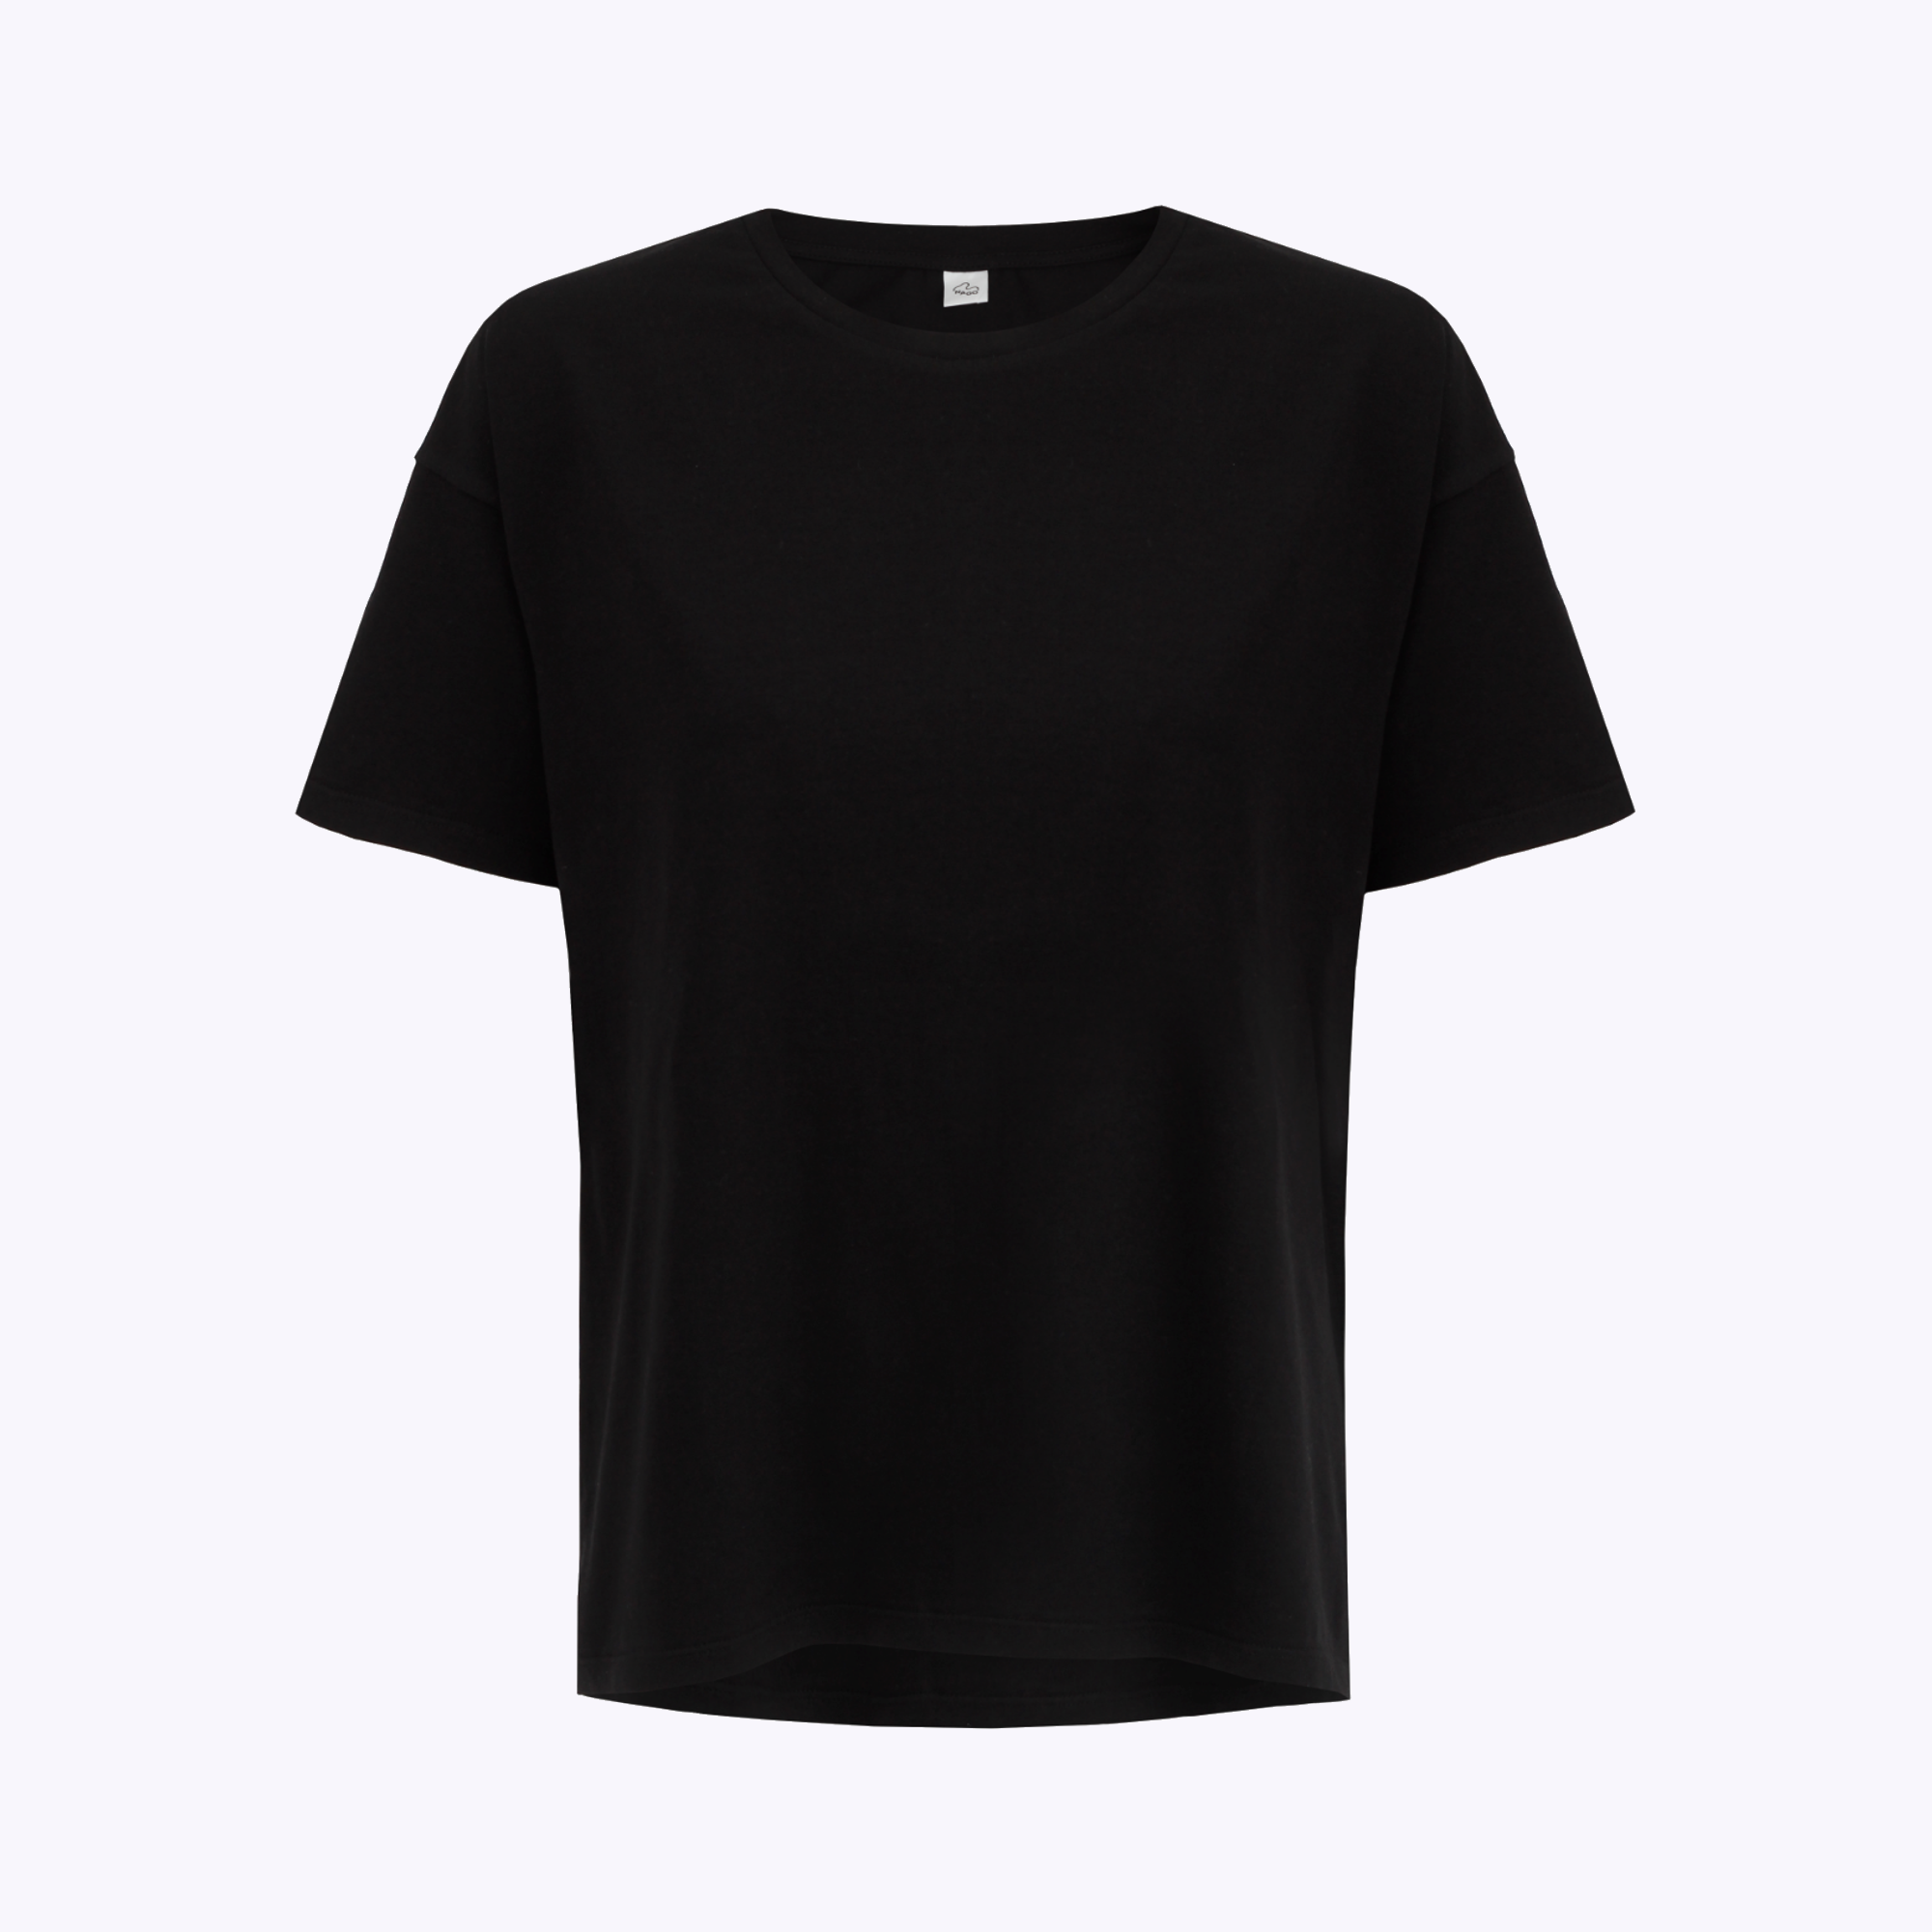 T-shirt z bawełny organicznej / 13 / 02 / onyx black